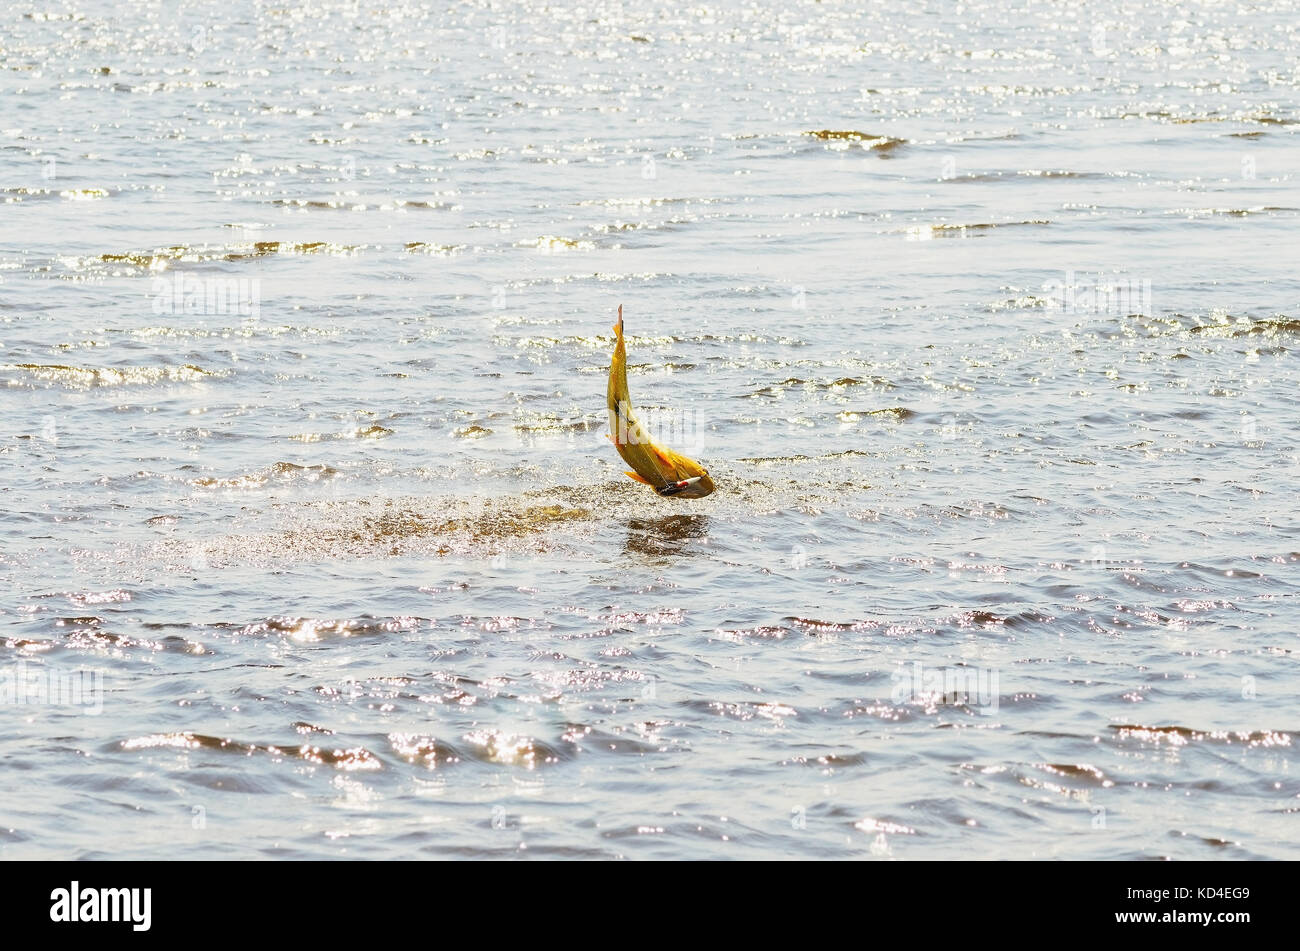 Poissons Dourado accroché par un appât artificiel et combats de sauter hors de l'eau, beau poisson d'or, scène de pêche sportive à une rivière de Pantanal, Brésil. Banque D'Images